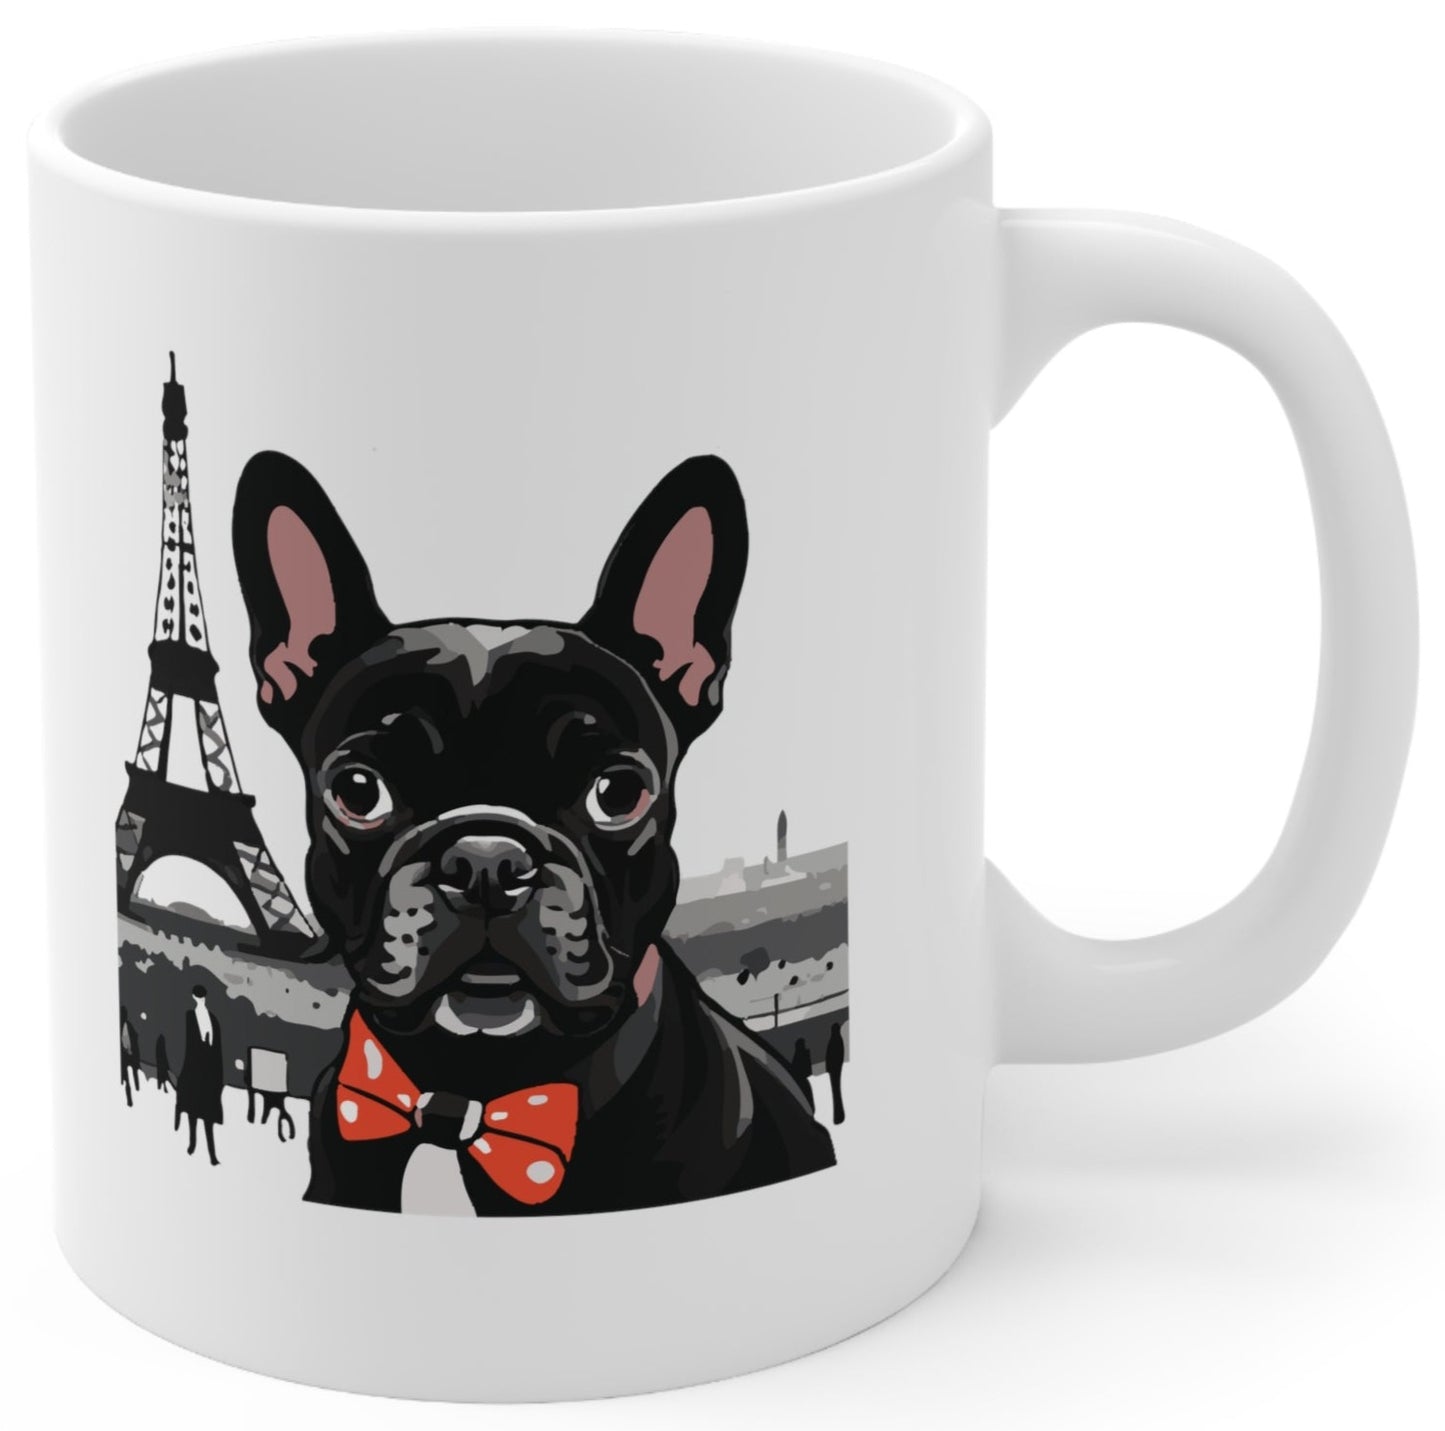 French Bulldog coffee mug